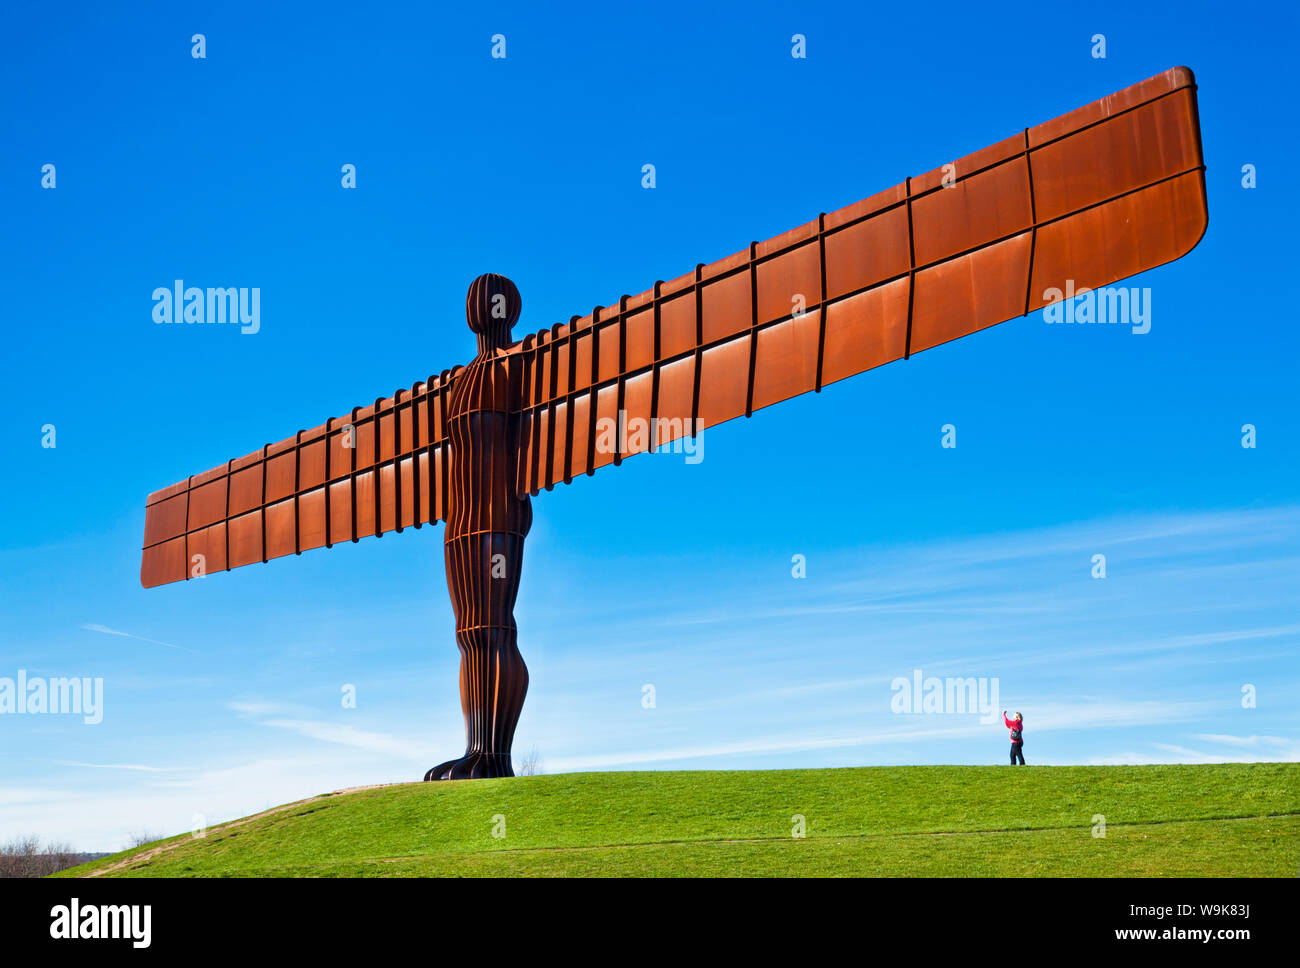 Person fotografieren der Engel des Nordens Skulptur von Antony Gormley, Gateshead, Newcastle-upon-Tyne Tyne und Wear, England, Vereinigtes Königreich Stockfoto